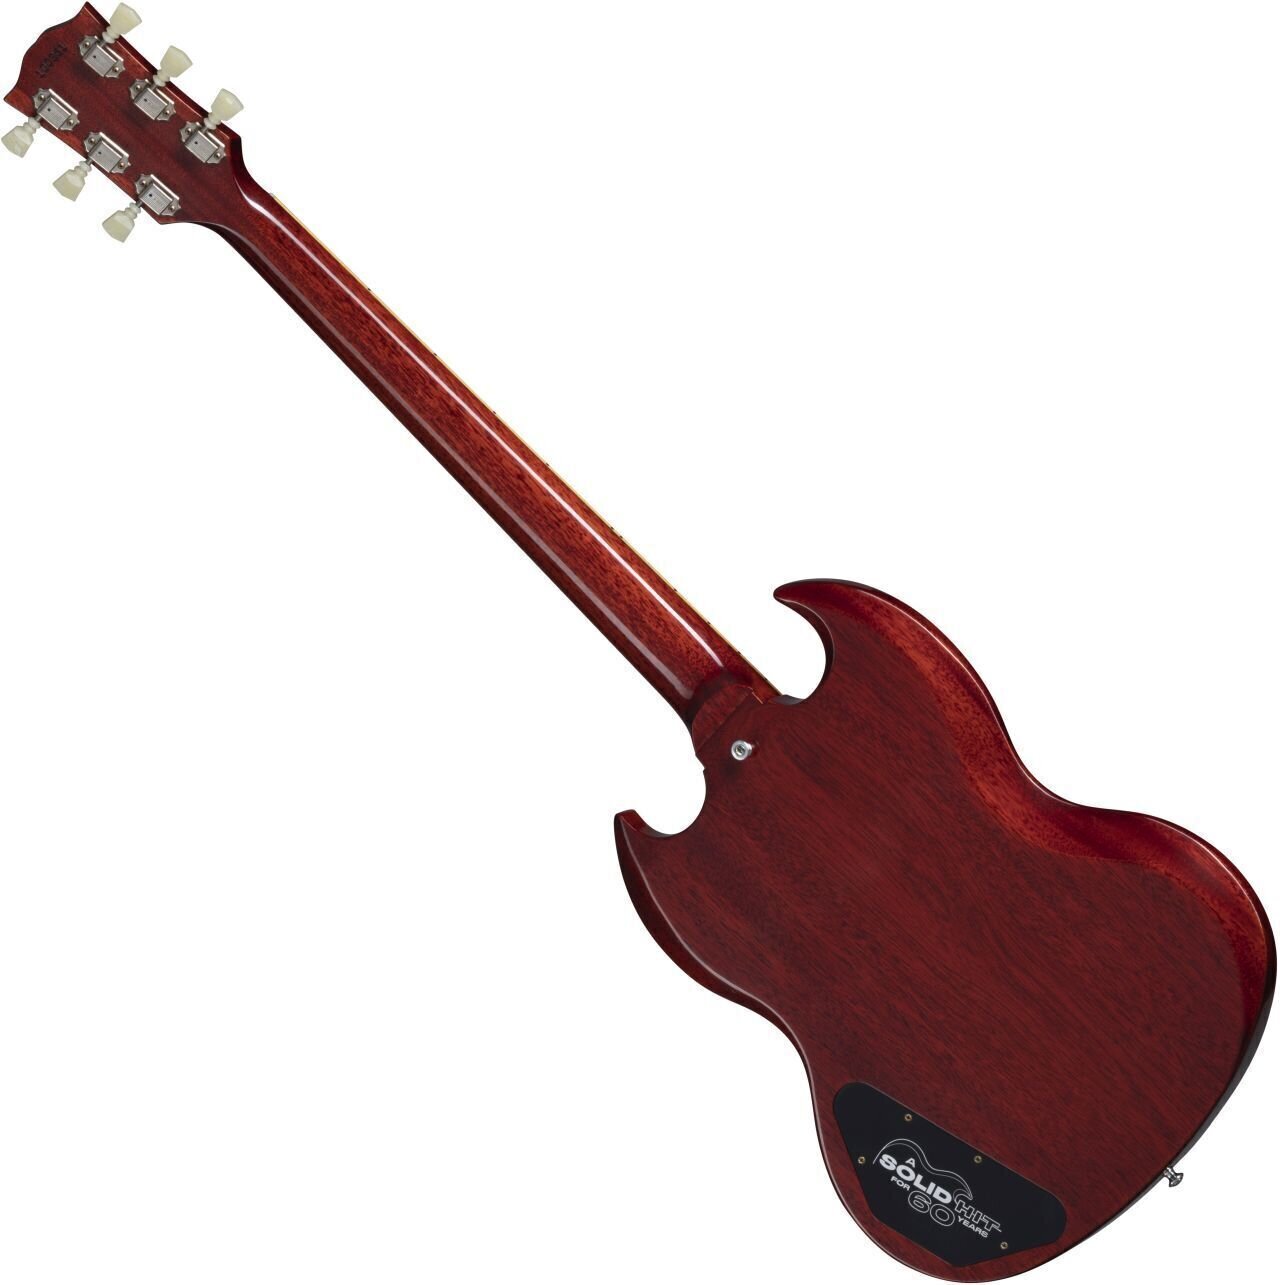 Gibson Sg Les Paul 1961 60th Ann. 2h Trem Rw - Vos Cherry Red - Guitare Électrique Double Cut - Variation 1